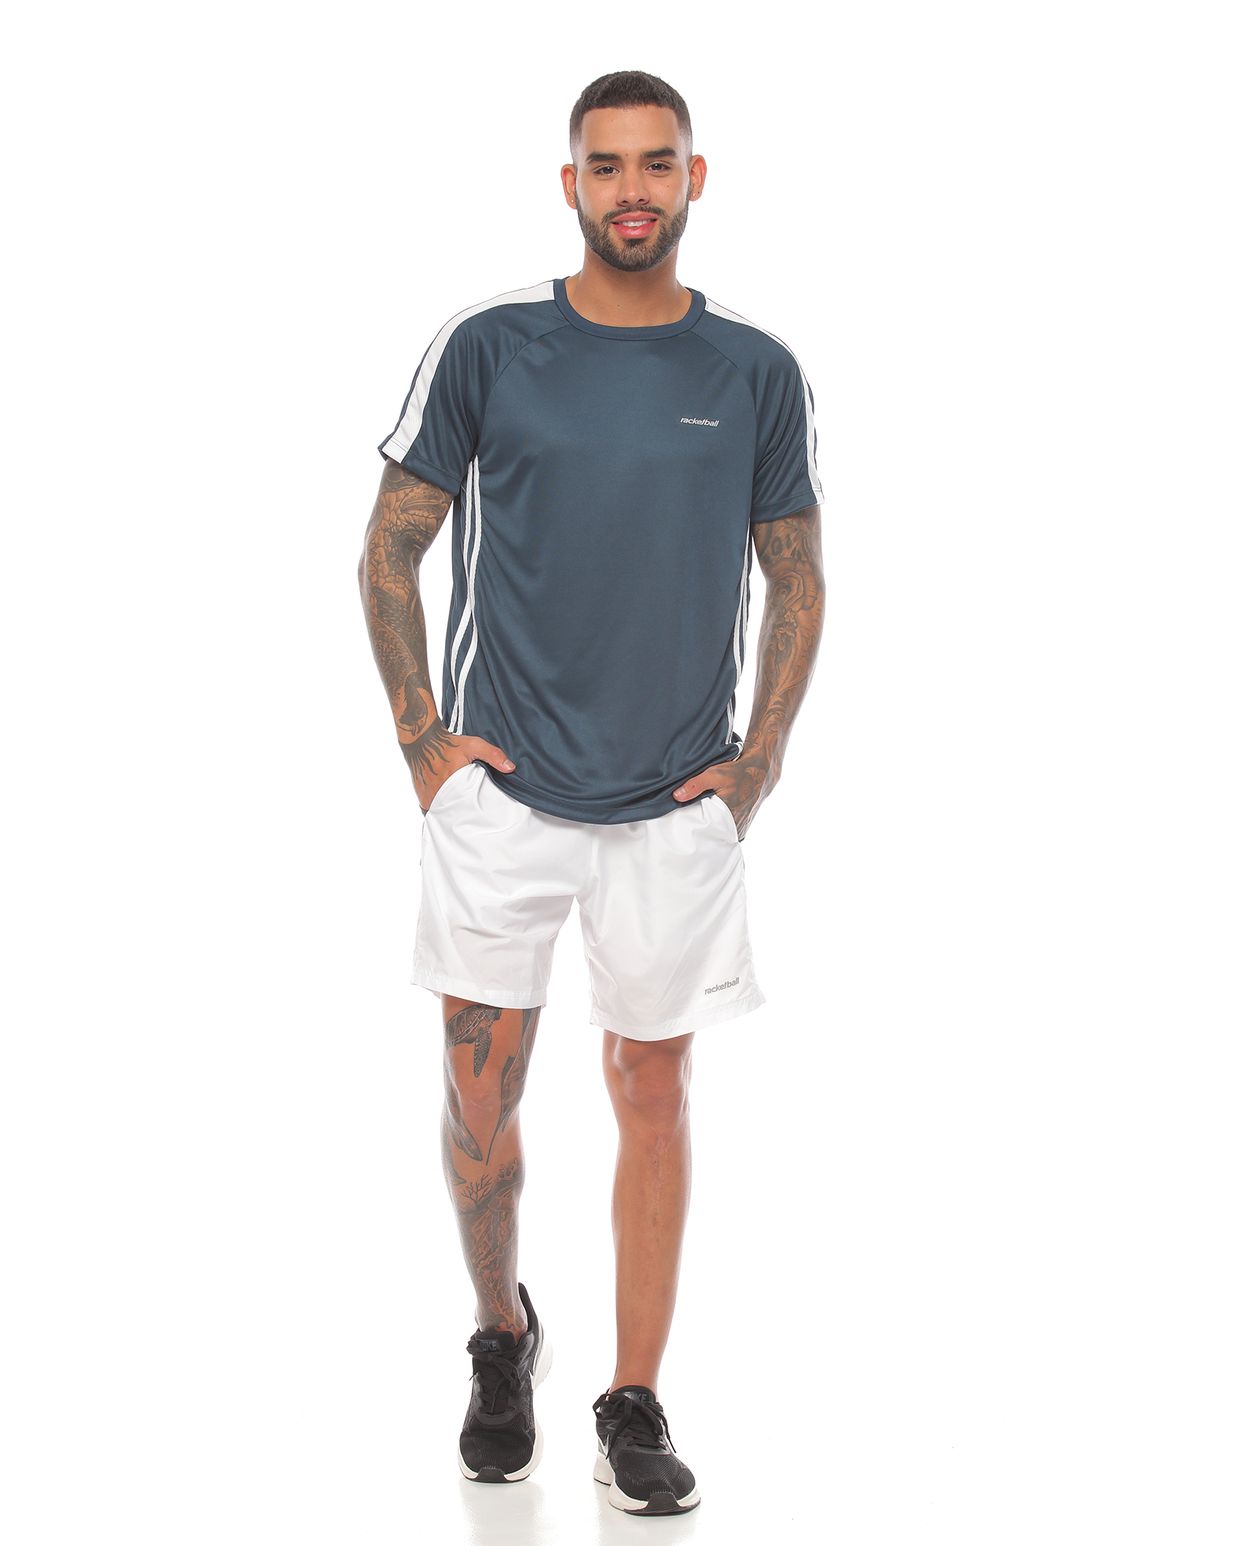 modelo con camiseta deportiva color petroleo y pantaloneta deportiva blanca para hombre cuerpo completo